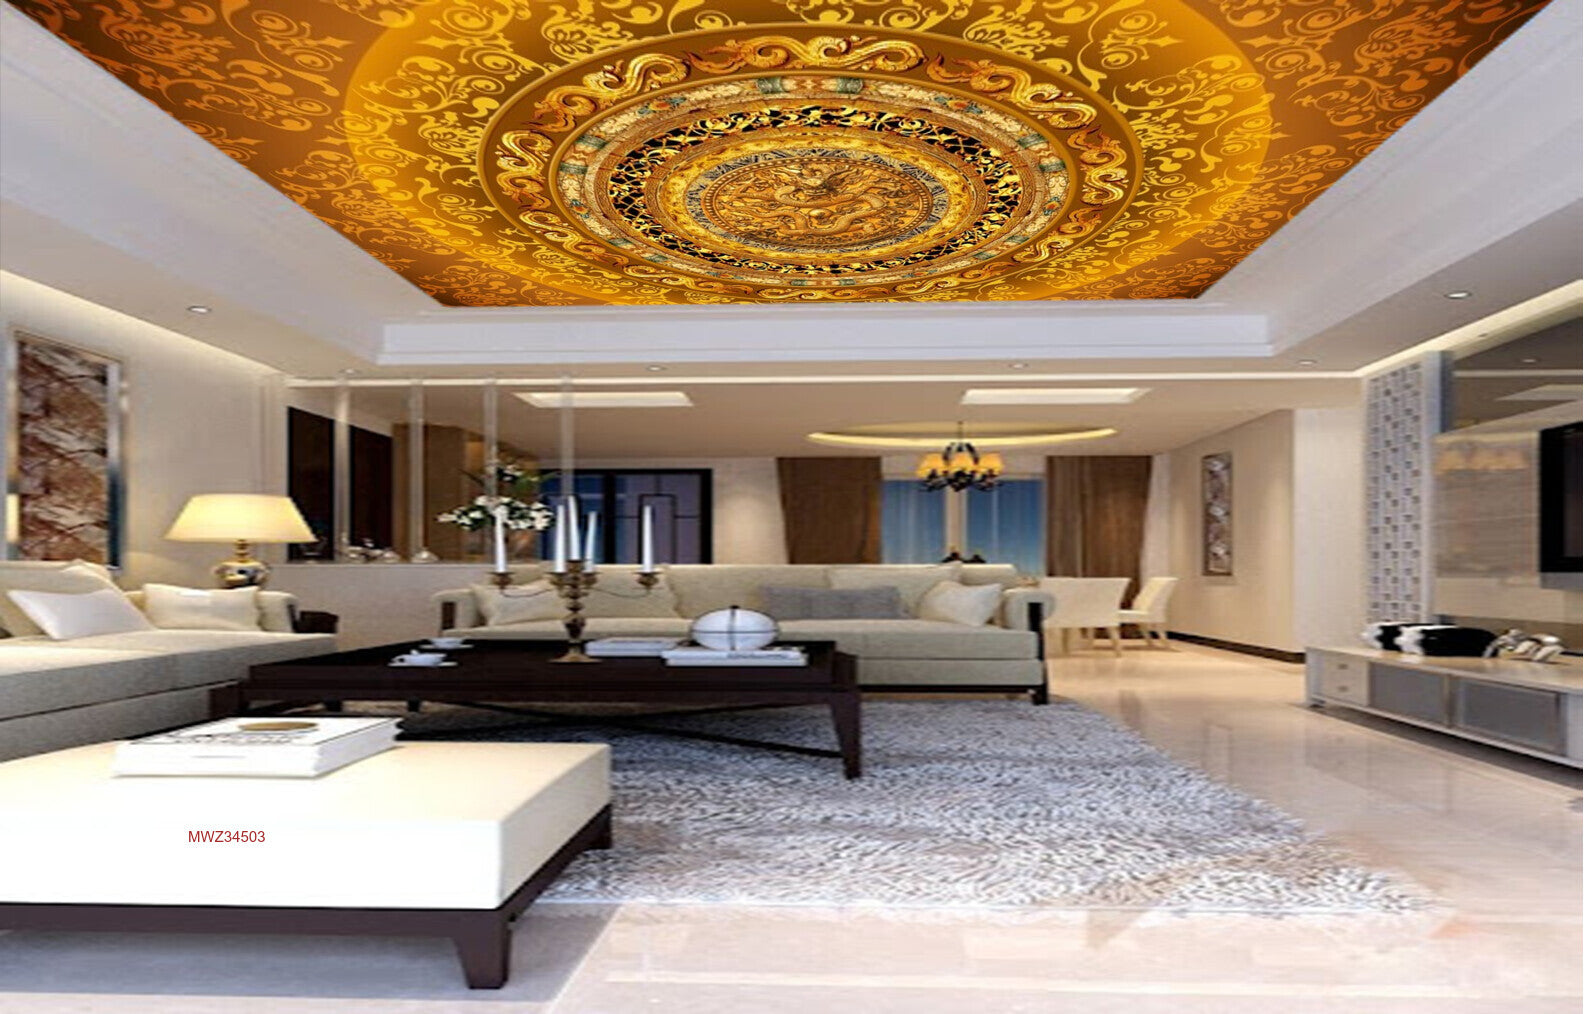 Avikalp MWZ3450 Golden Orange Flower Mandala Design HD Wallpaper for Ceiling